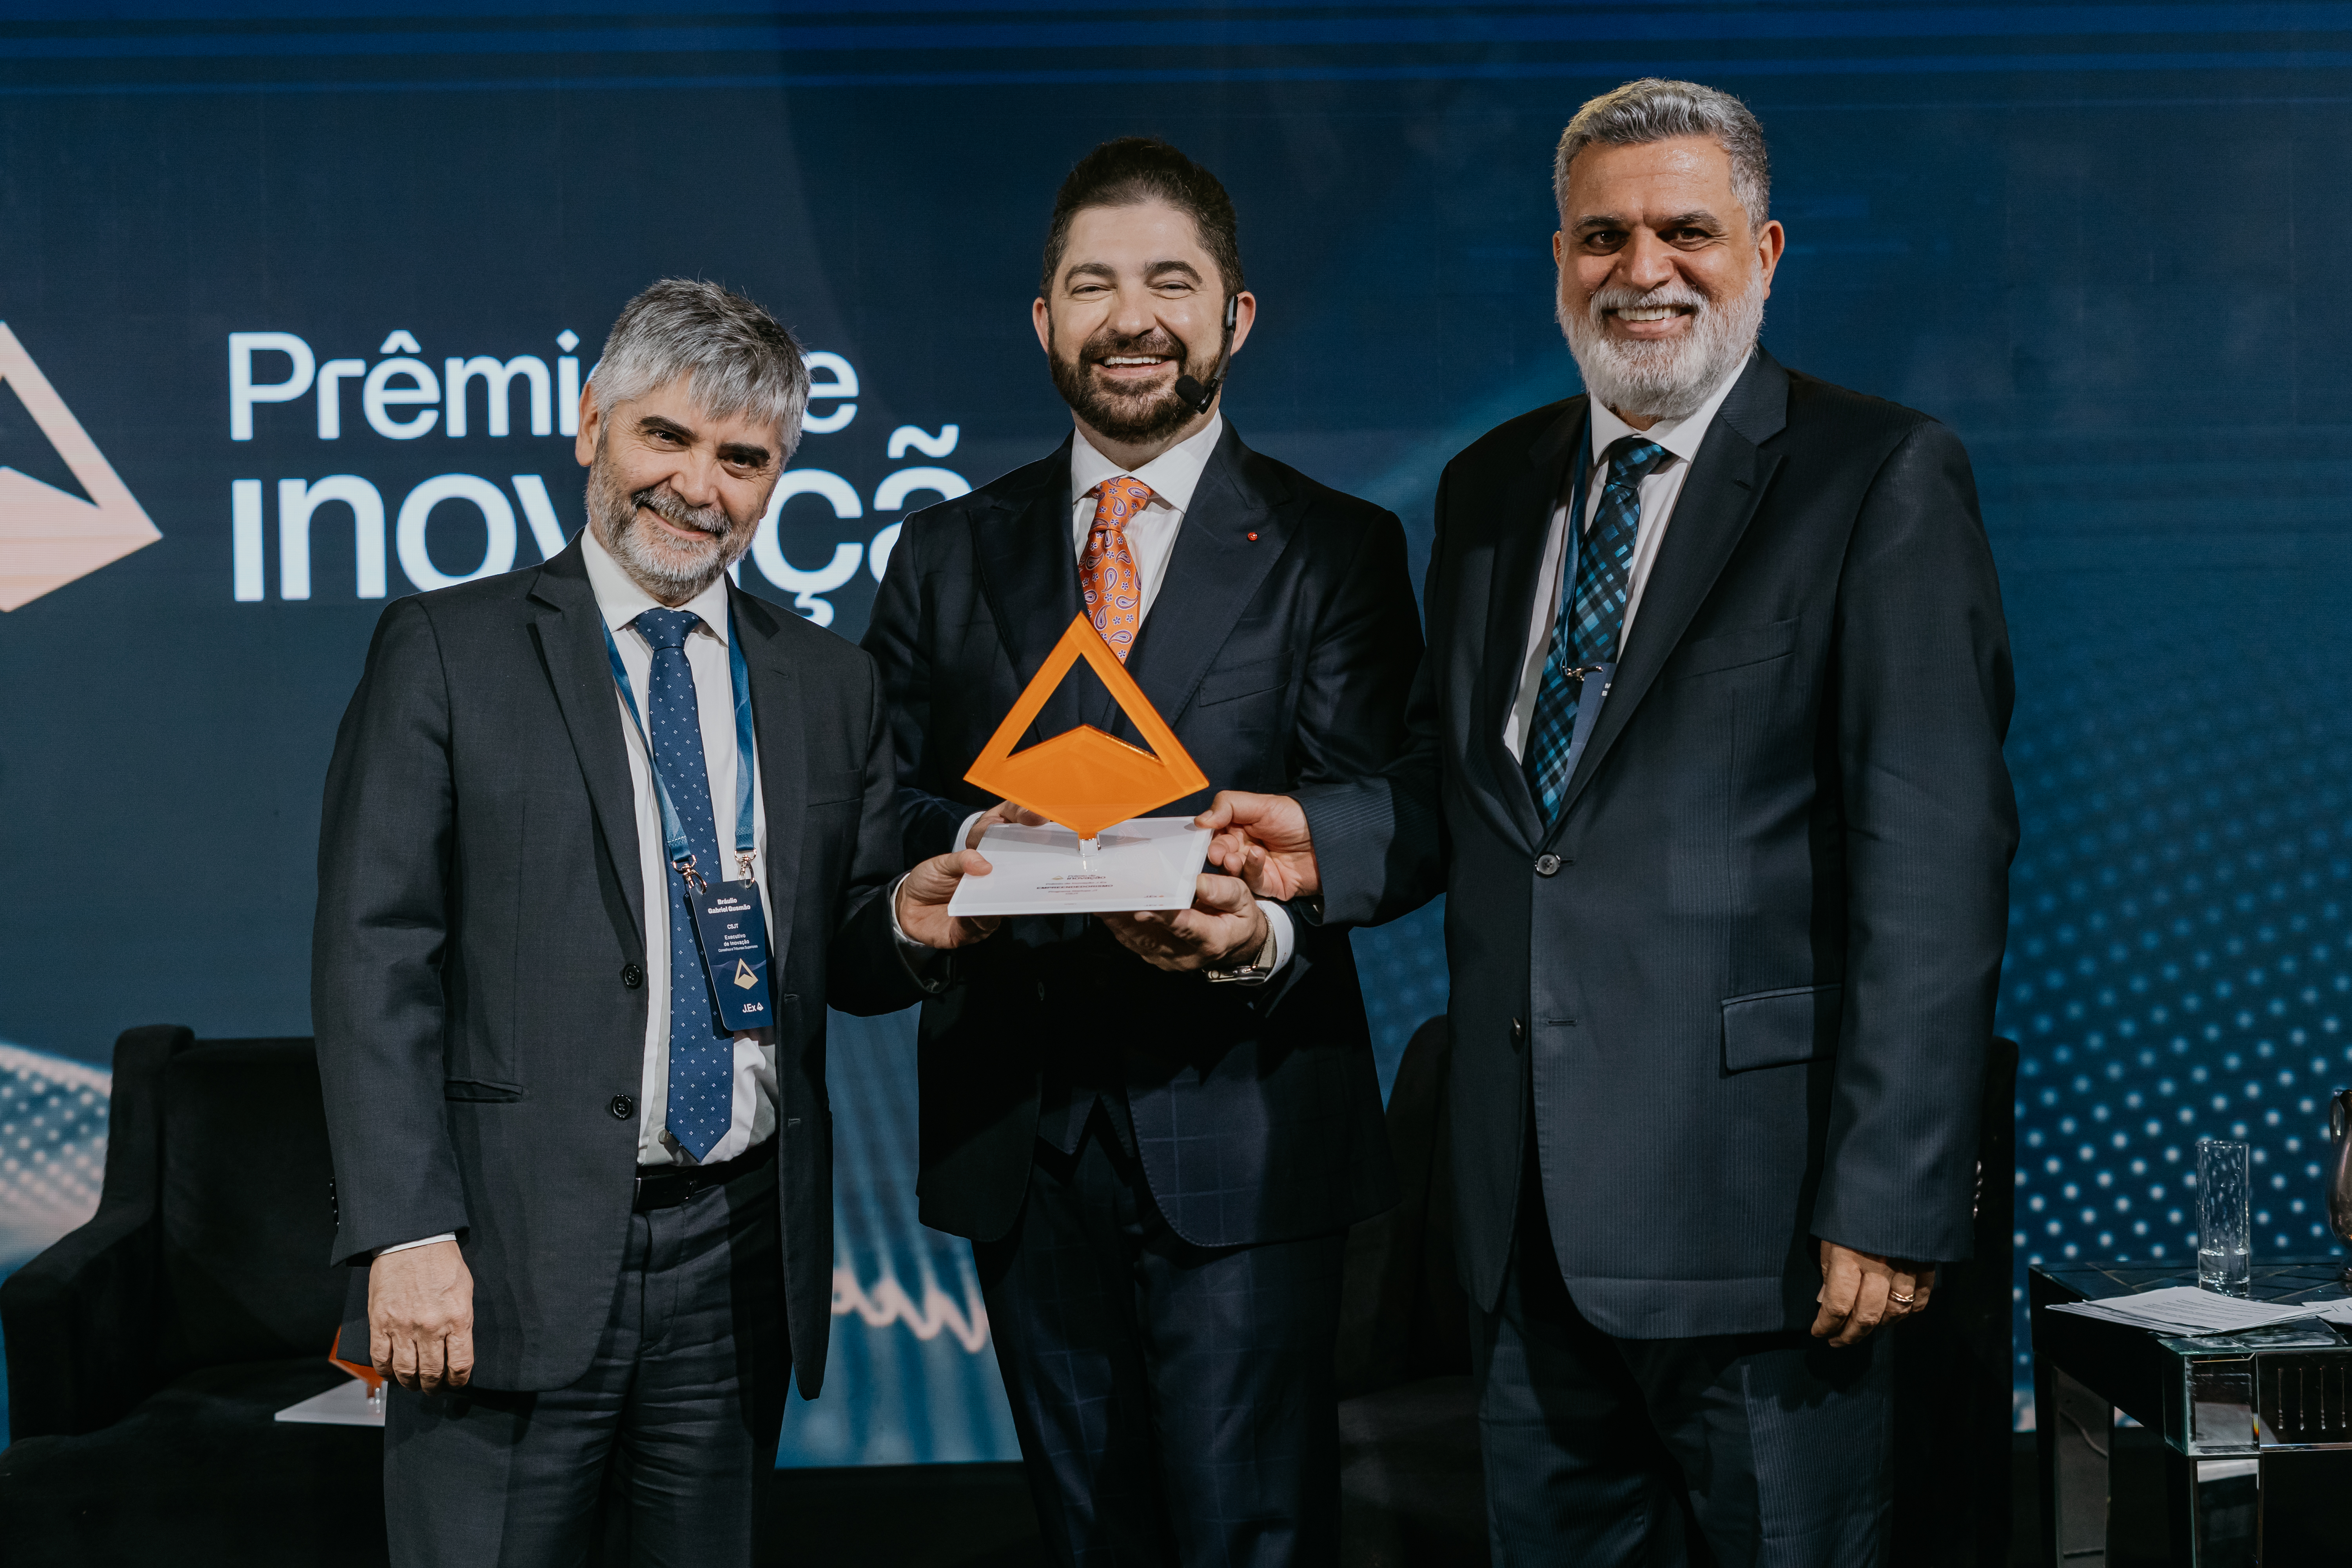 O prêmio foi recebido pelo presidente do TST e do CSJT, ministro Lelio Bentes Corrêa, e o secretário-geral do CSJT, juiz Bráulio Gusmão. (Foto: J.Ex)